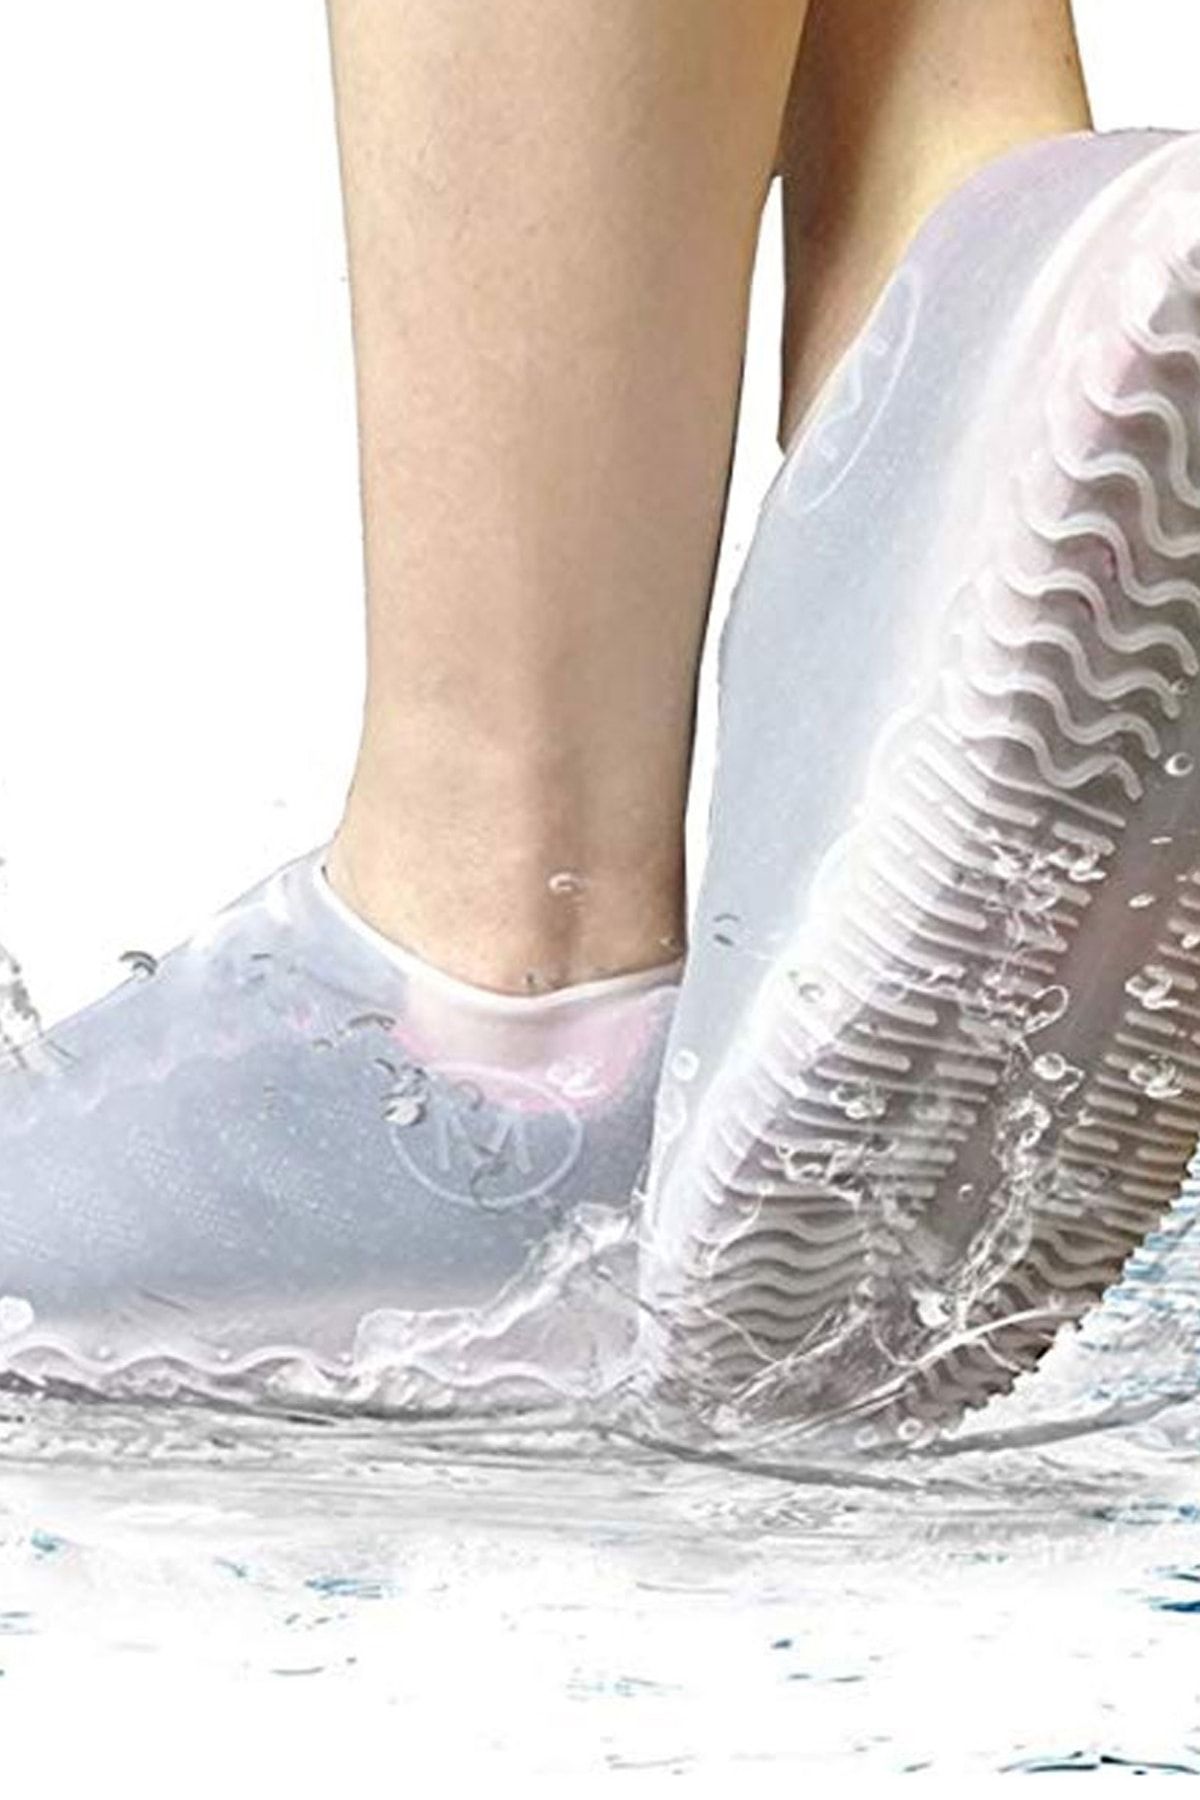 TechnoStation 1.kalite Silikon Yağmur Koruyucu Ayakkabı Kılıfı Kaymaz Dayanıklı Su Geçiremez Yağmurluk (40-46)